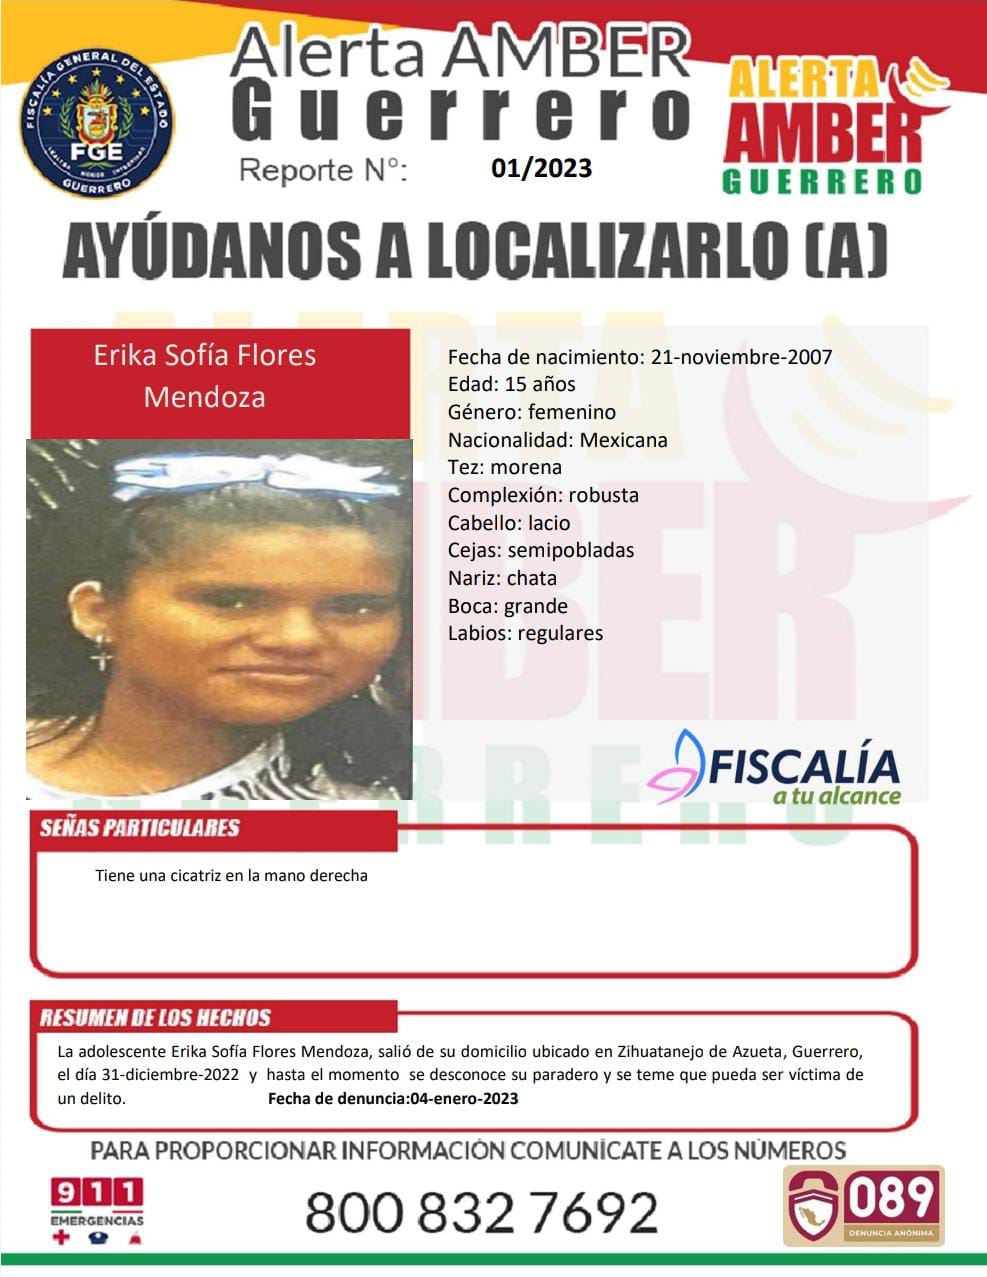 Fiscalía General Del Estado Solicita Su Colaboración Para Localizar A Erika Sofía Flores Mendoza.